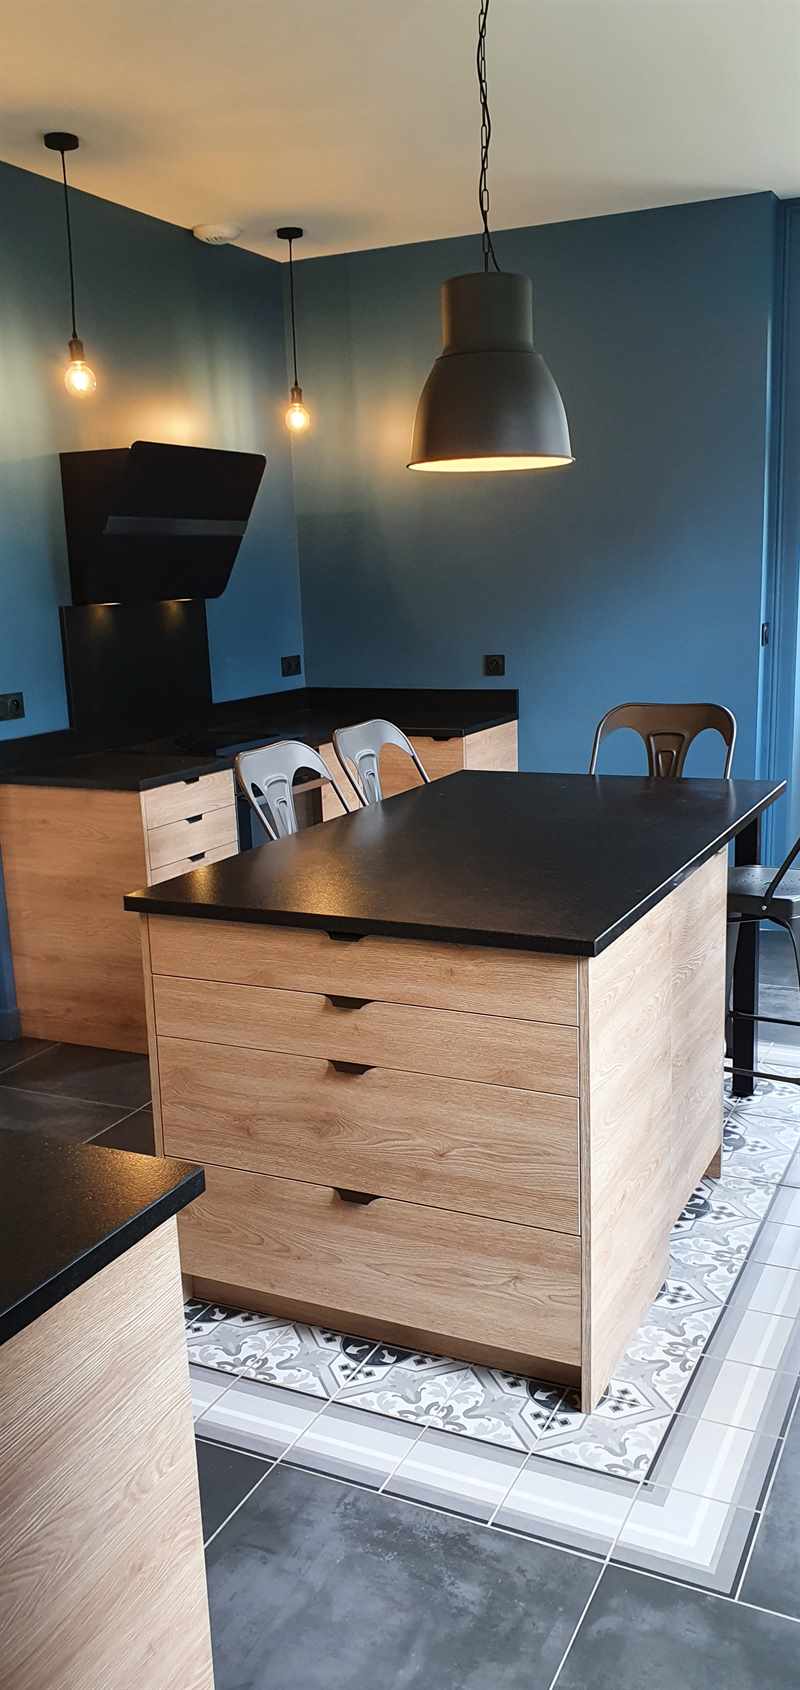 Cuisine fermée de style contemporain bois et noir à Dinan | Raison Home - 3